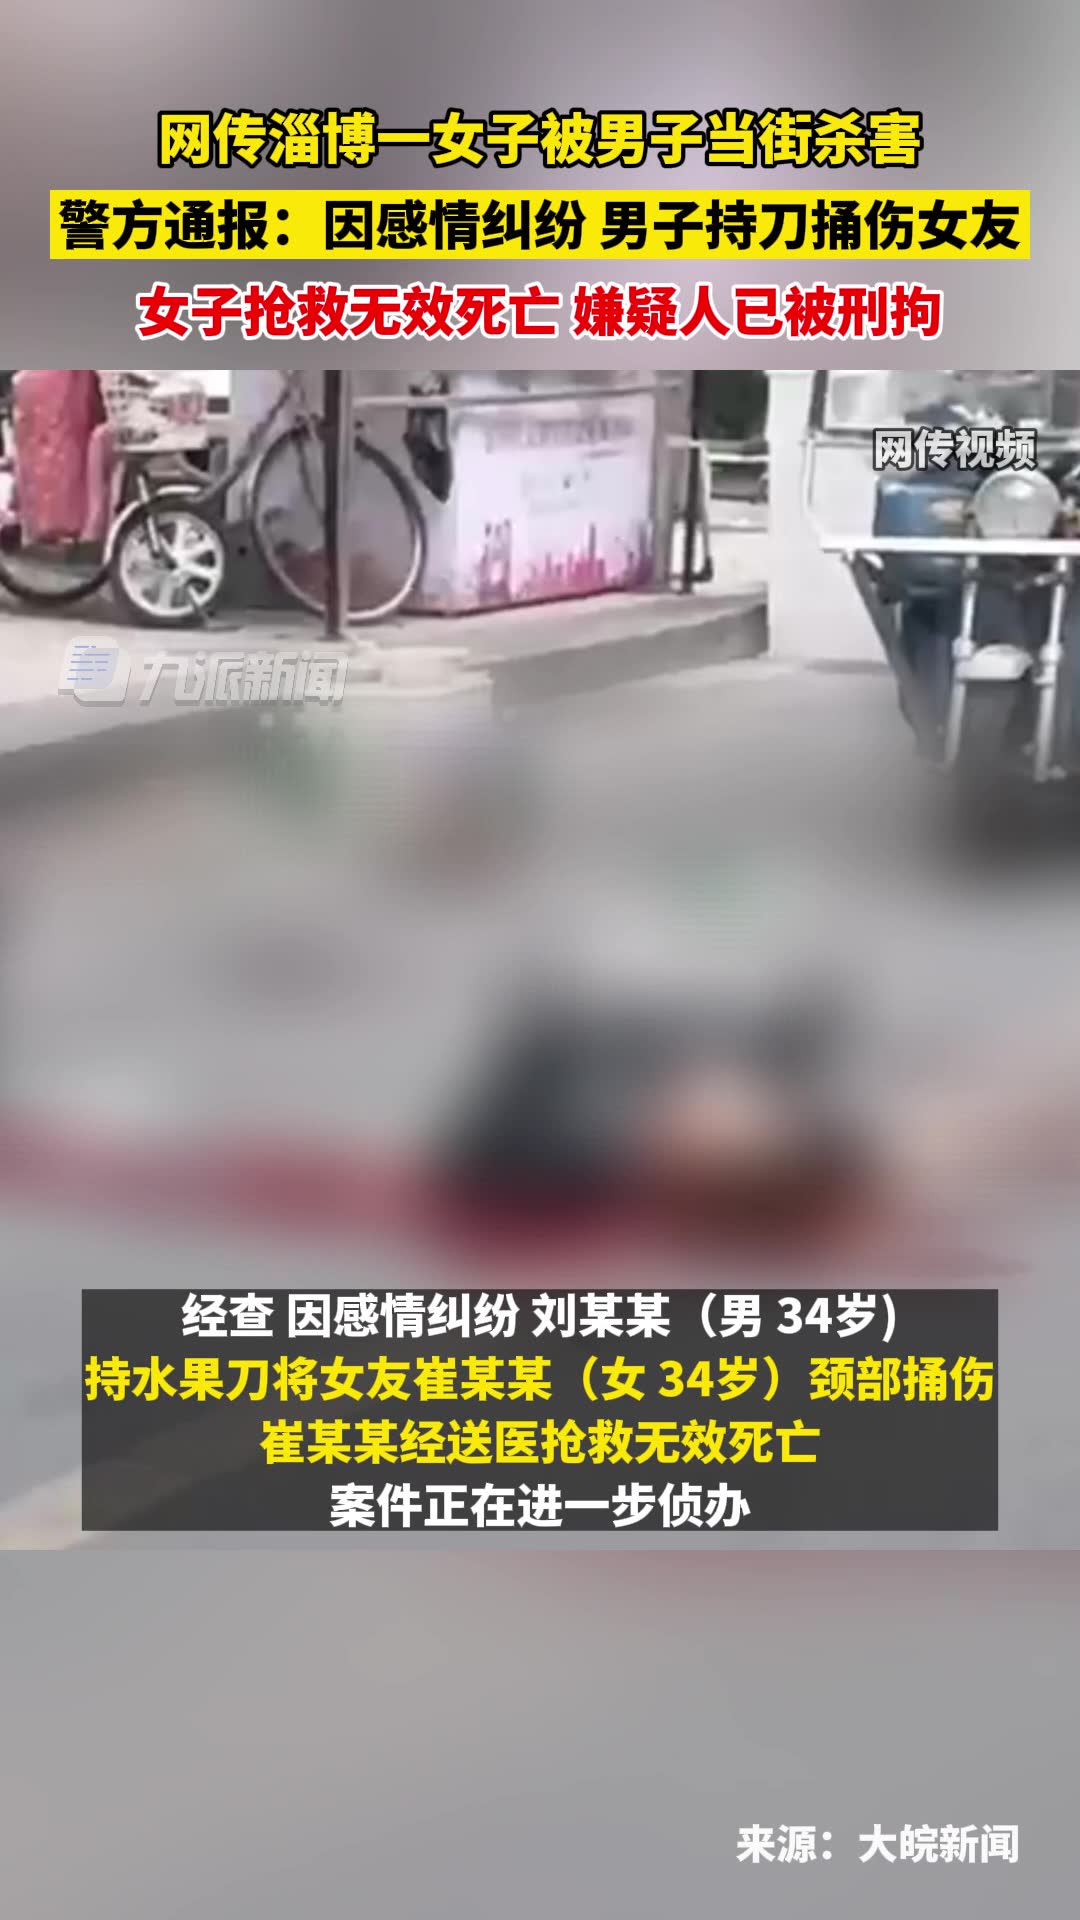 中国籍女子当街被杀画面曝光！传多声尖叫 - 社会新闻 - 温哥华天空 - Vansky